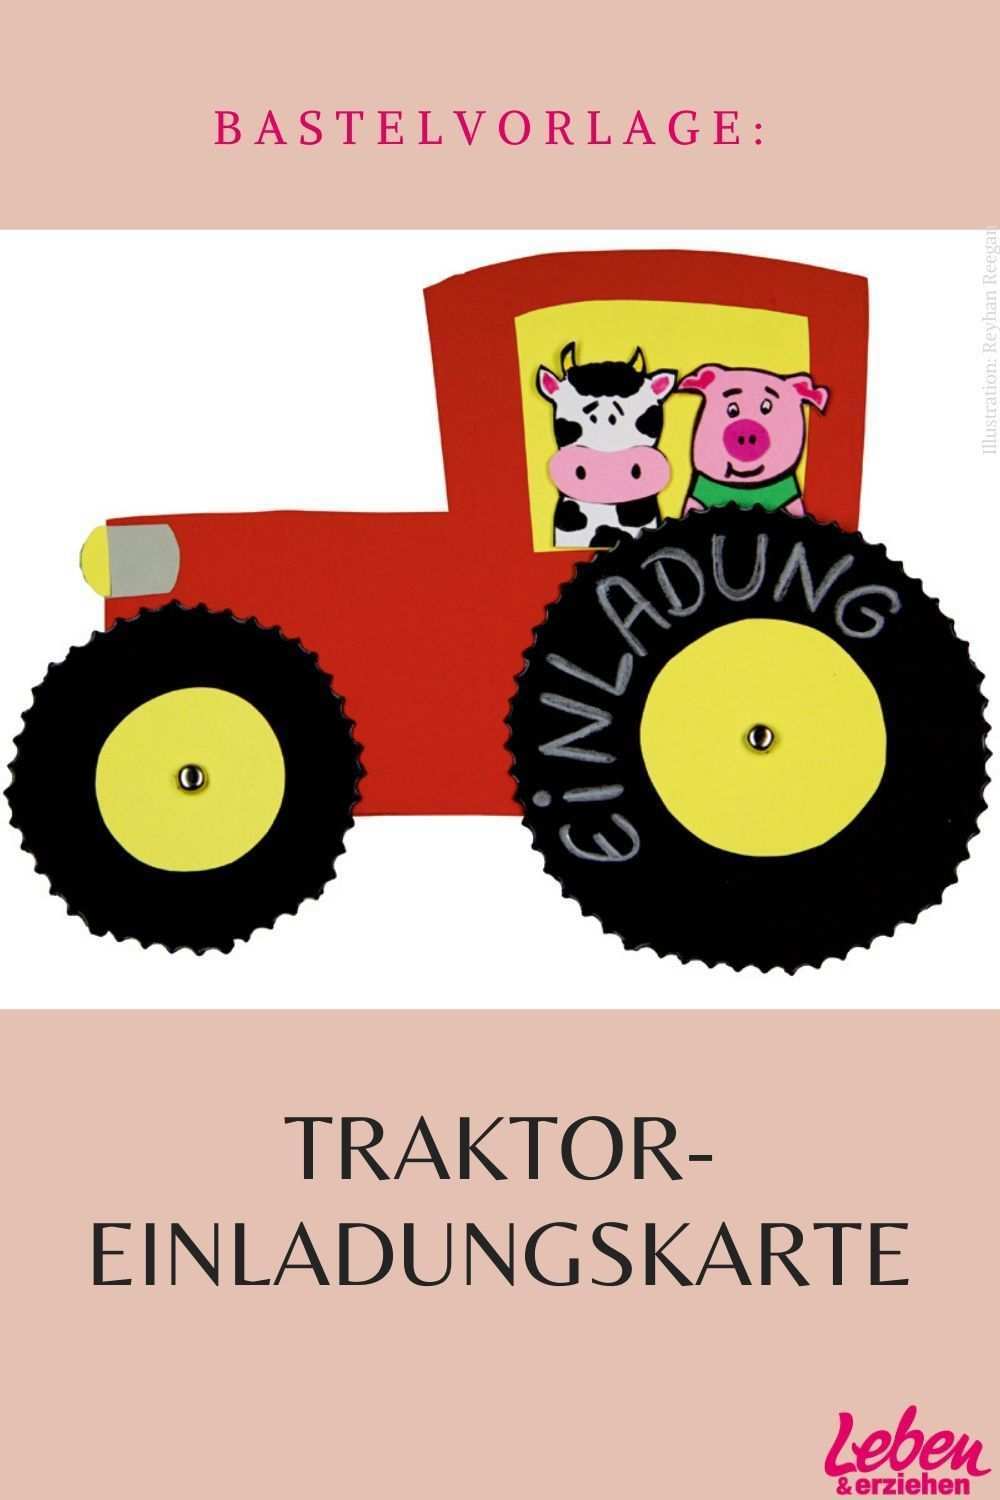 Traktor Vorlage Perfekt Als Einladungskarte In 2020